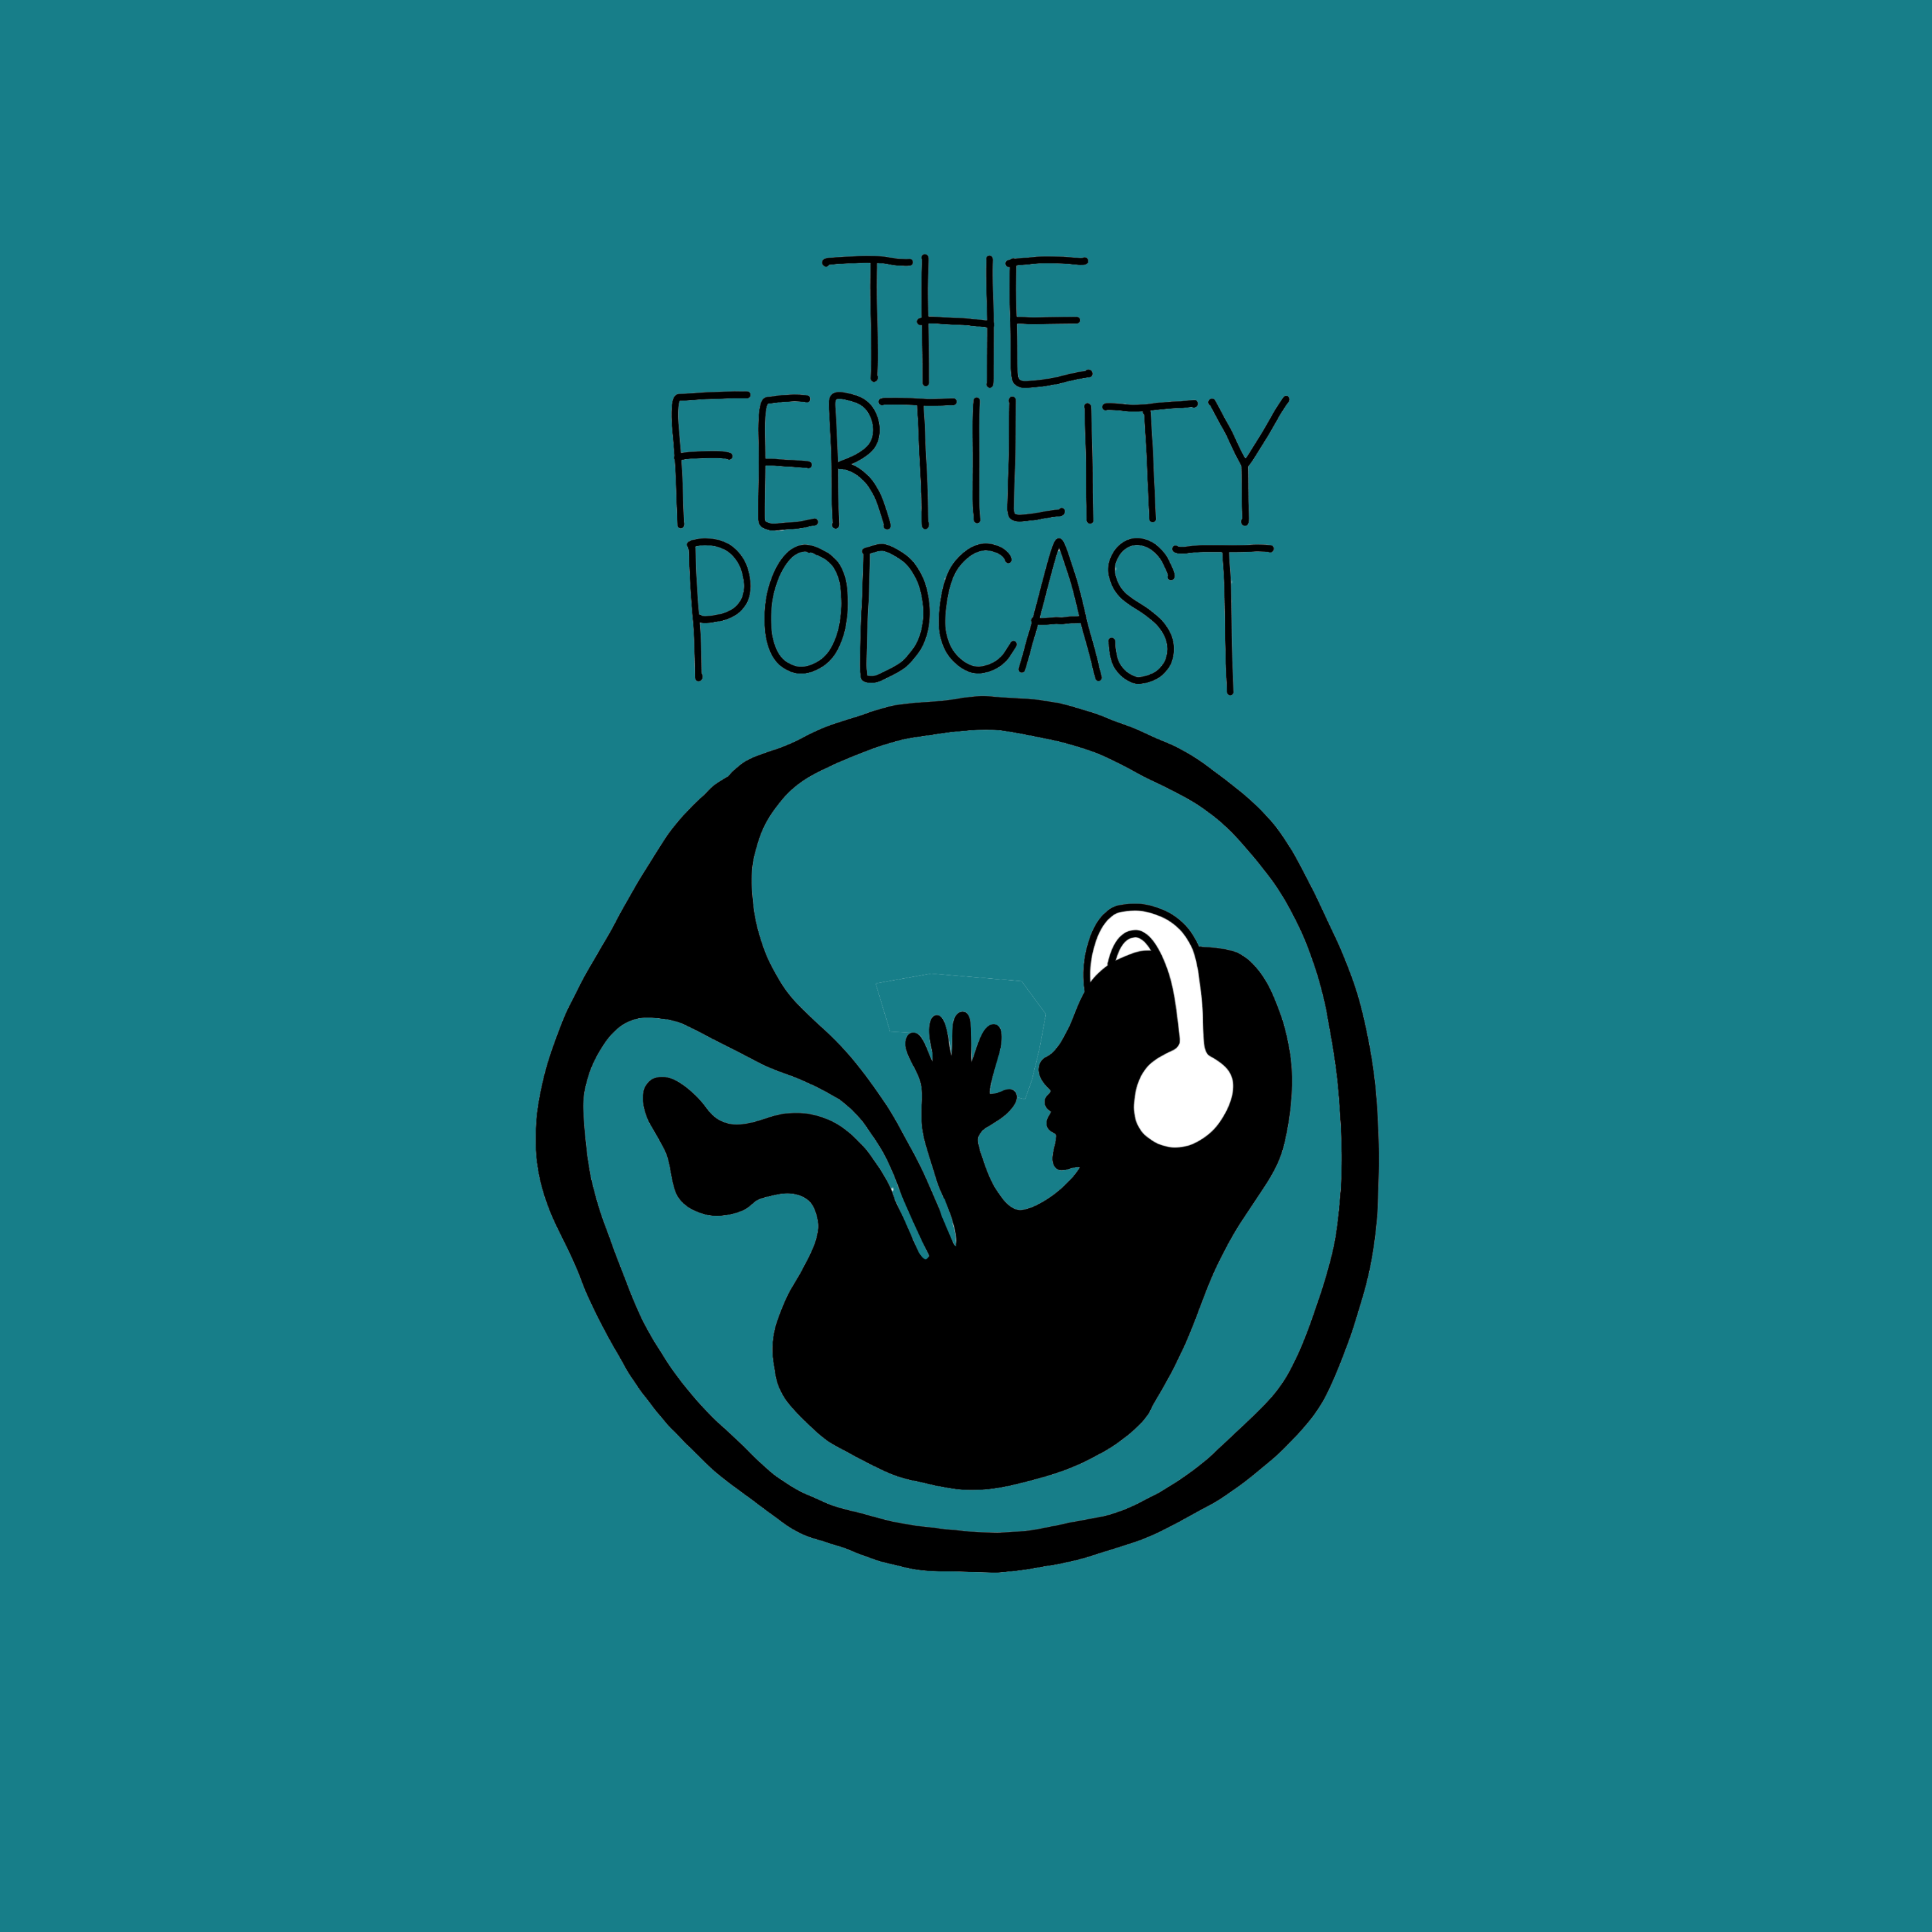 www.thefertilitypodcast.com